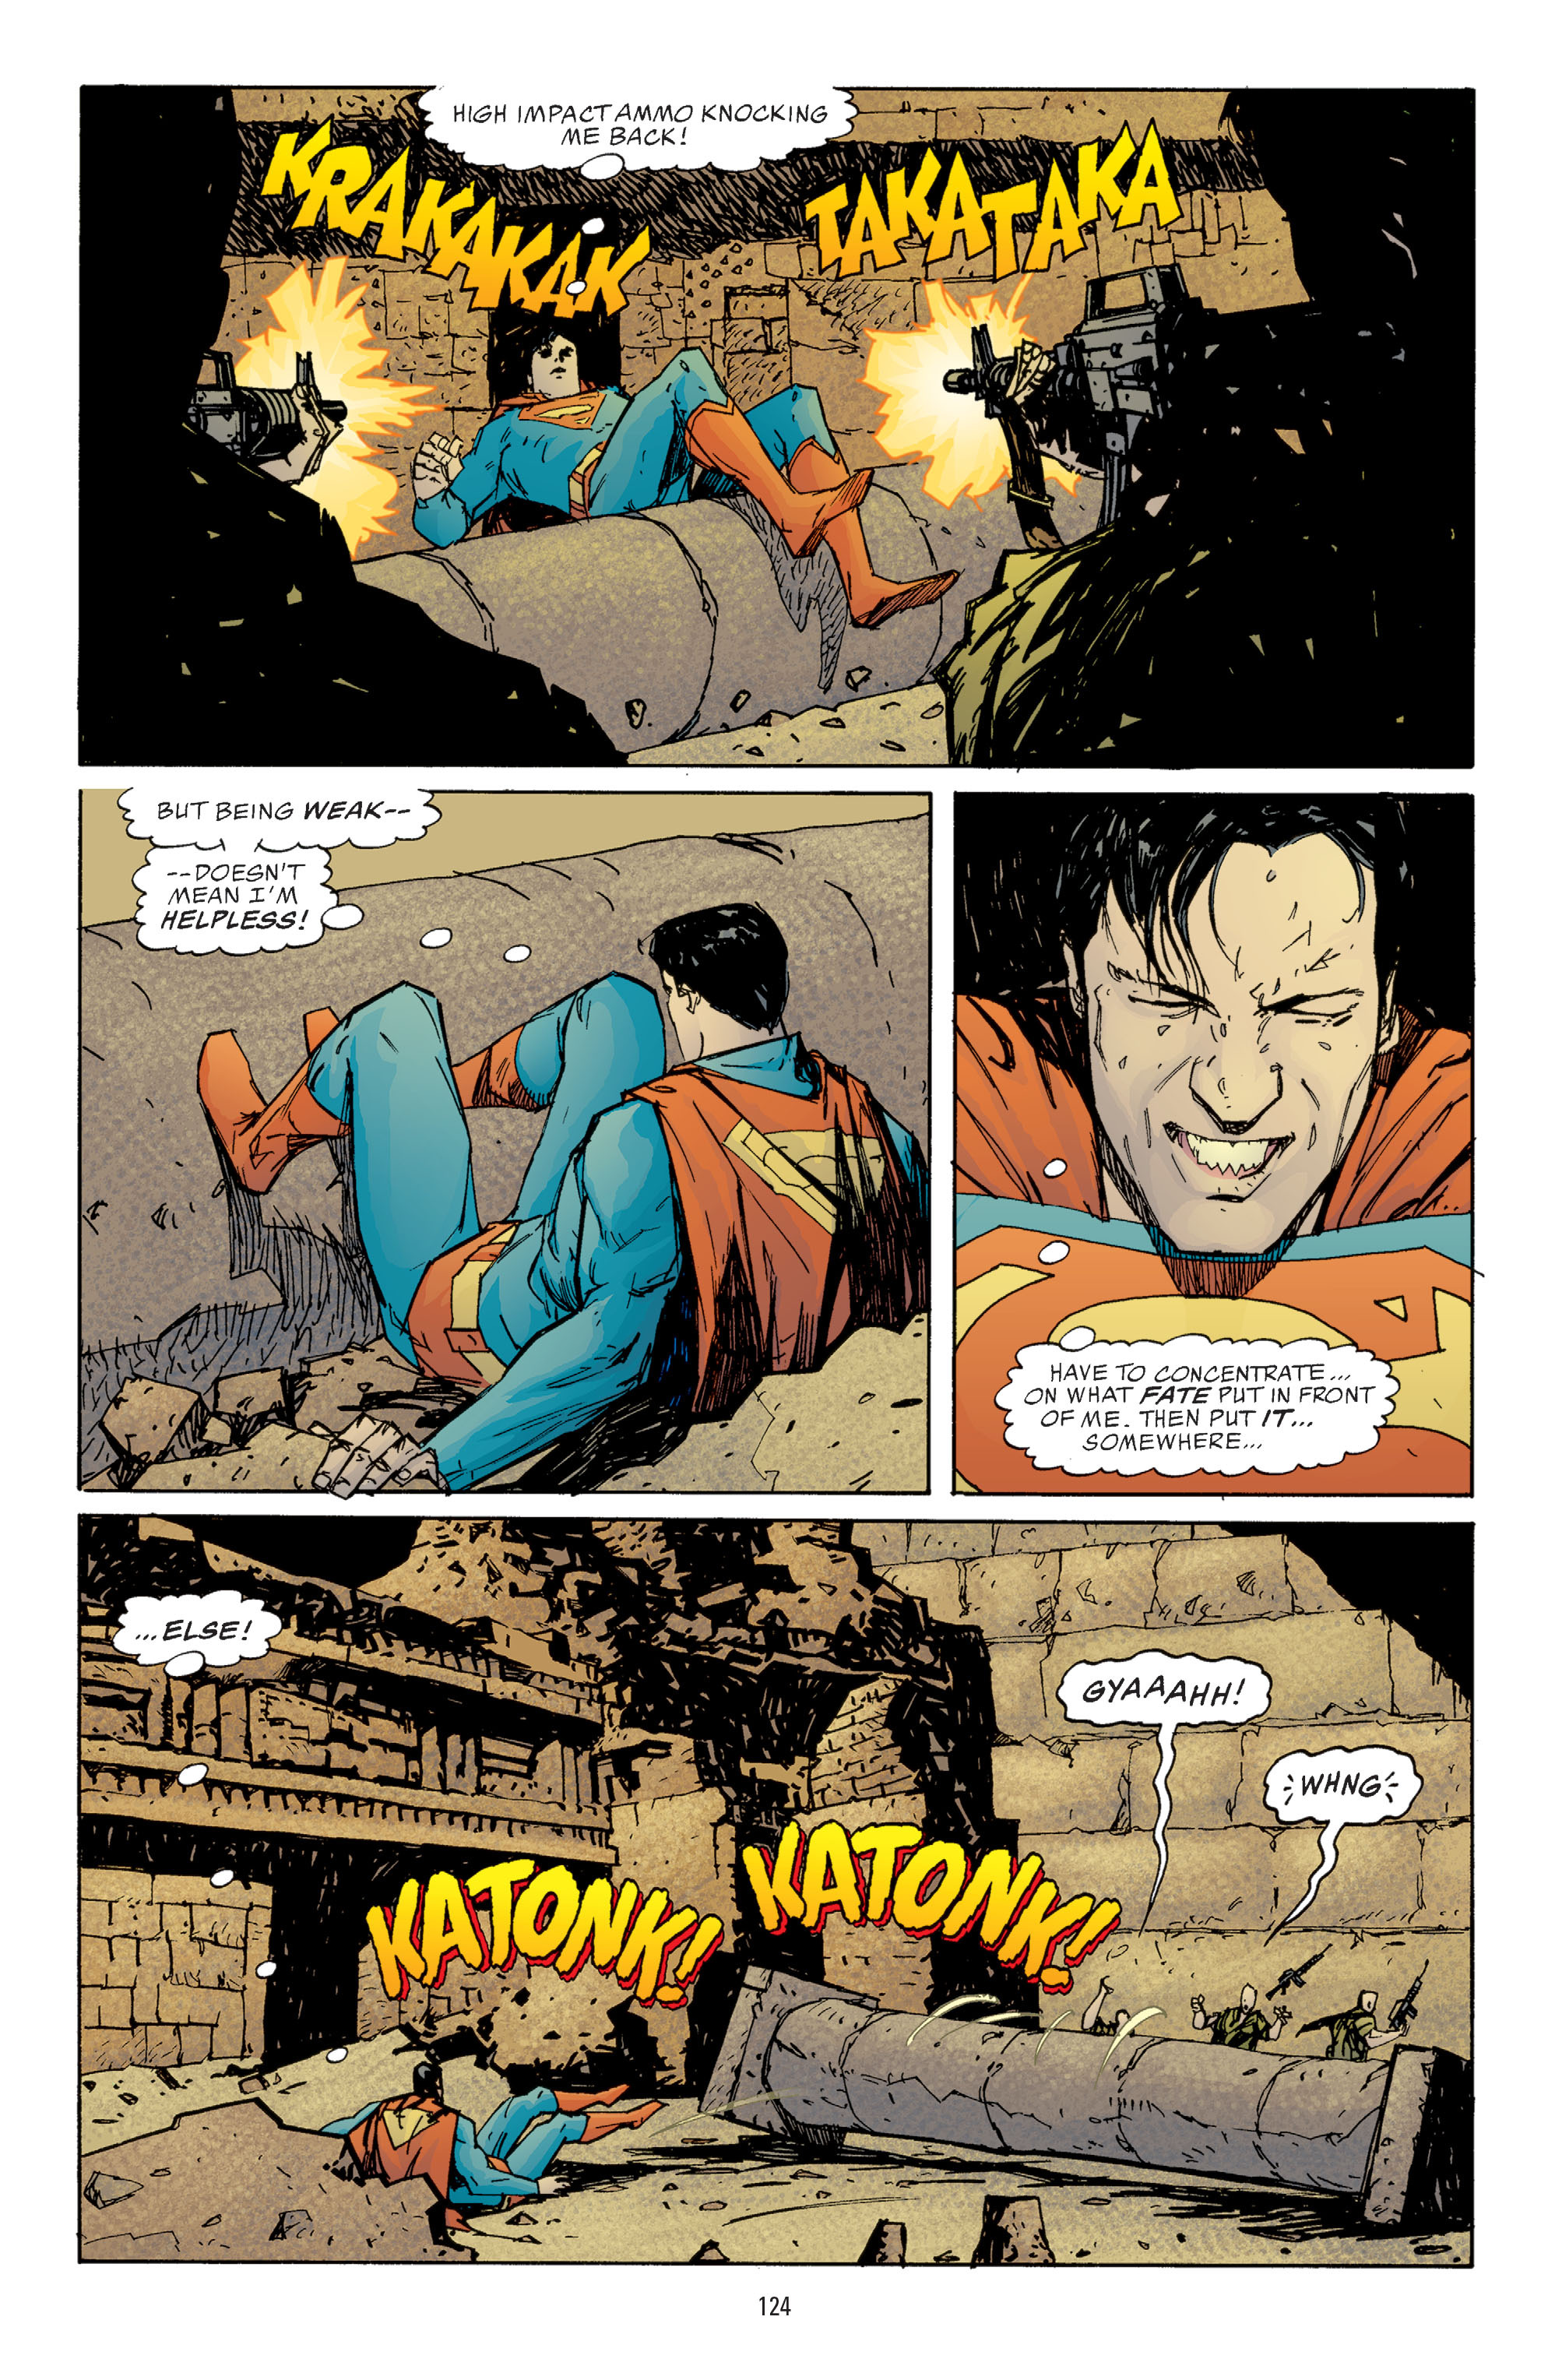 DC Comics/Dark Horse Comics: Justice League Full #1 - English 122